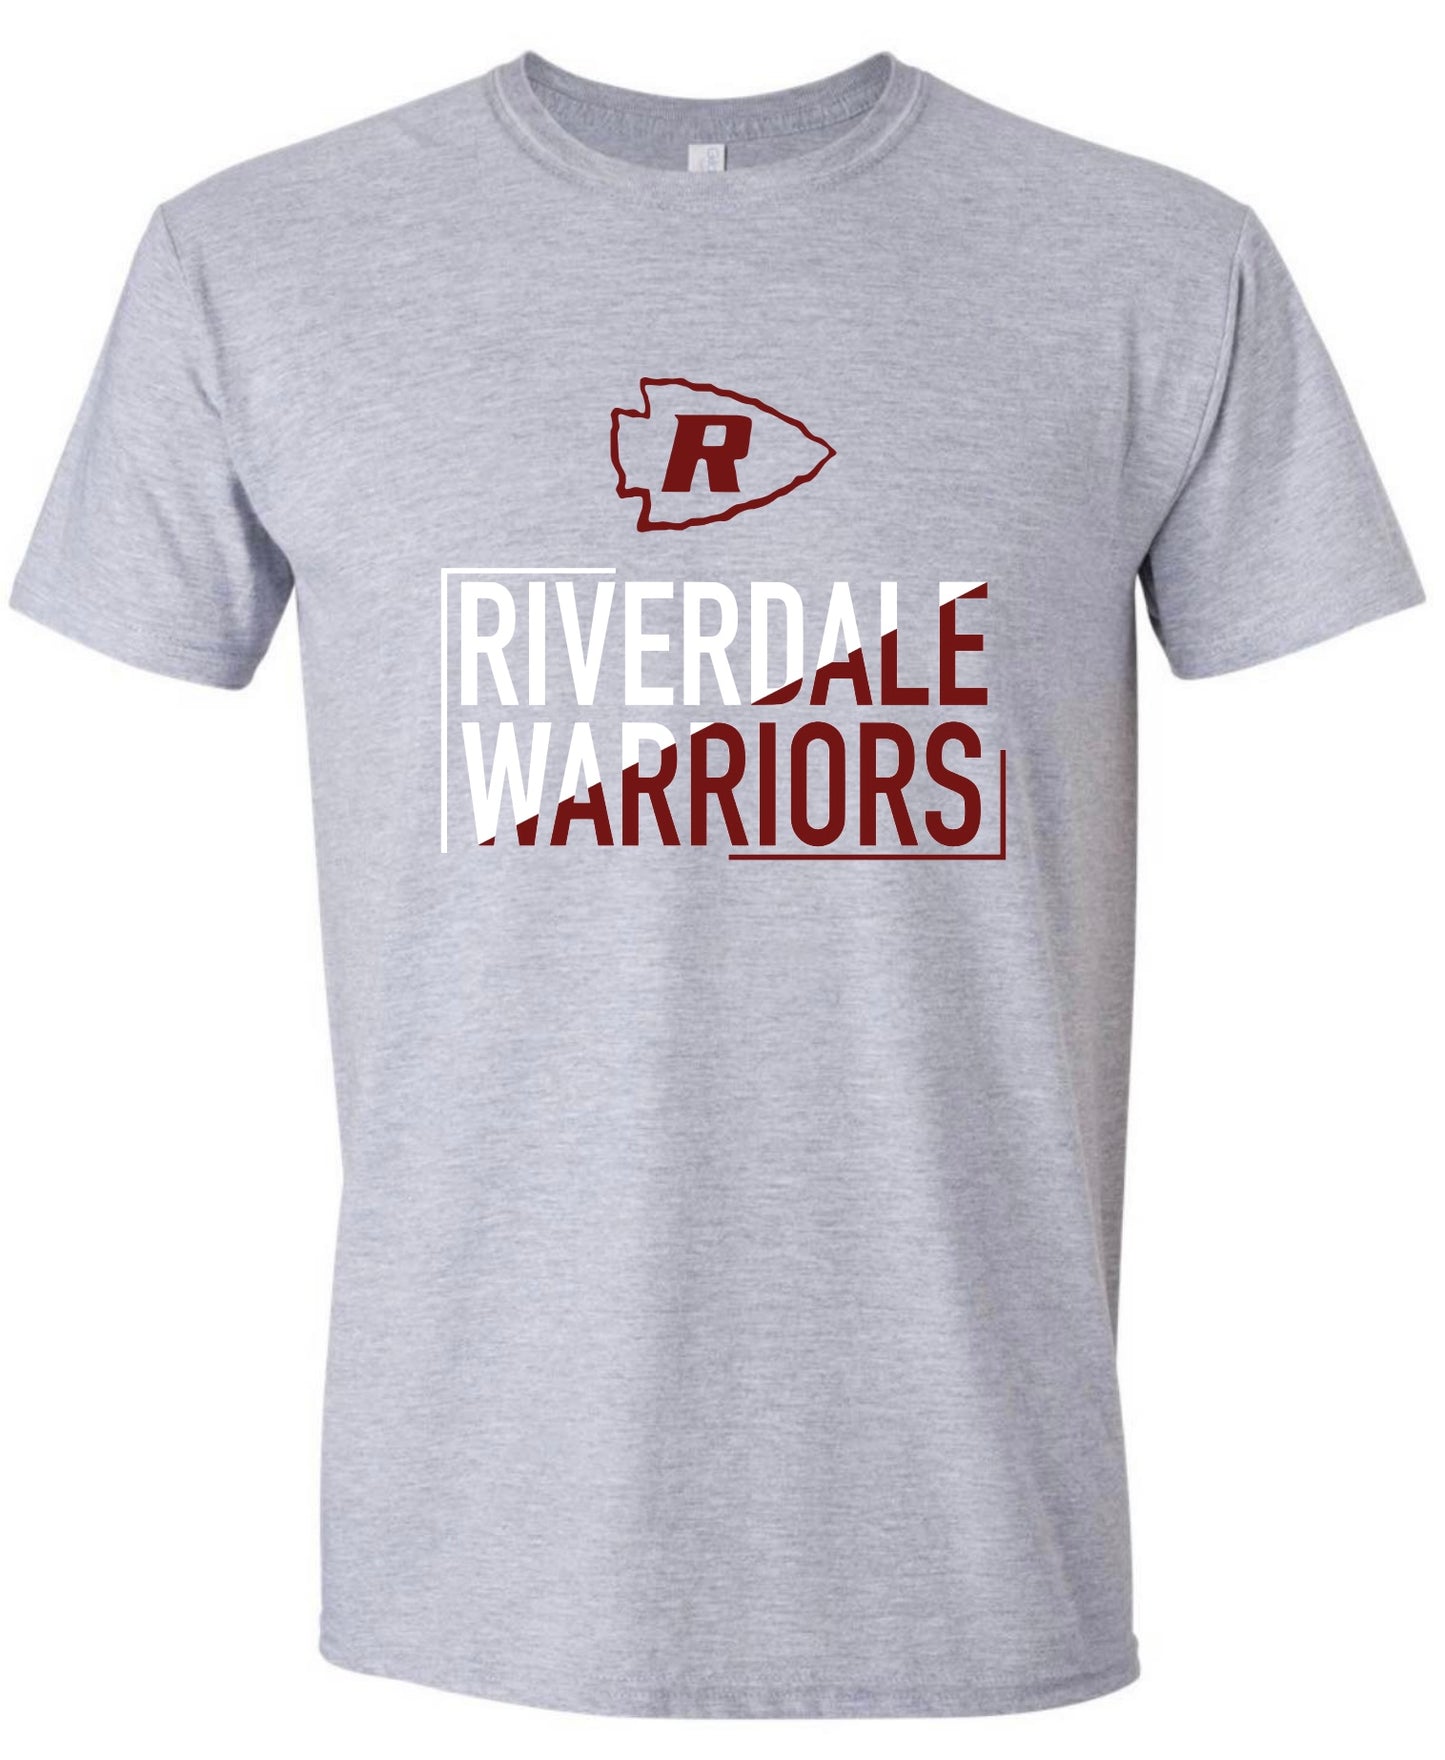 Riverdale Warriors Two Tone Tshirt